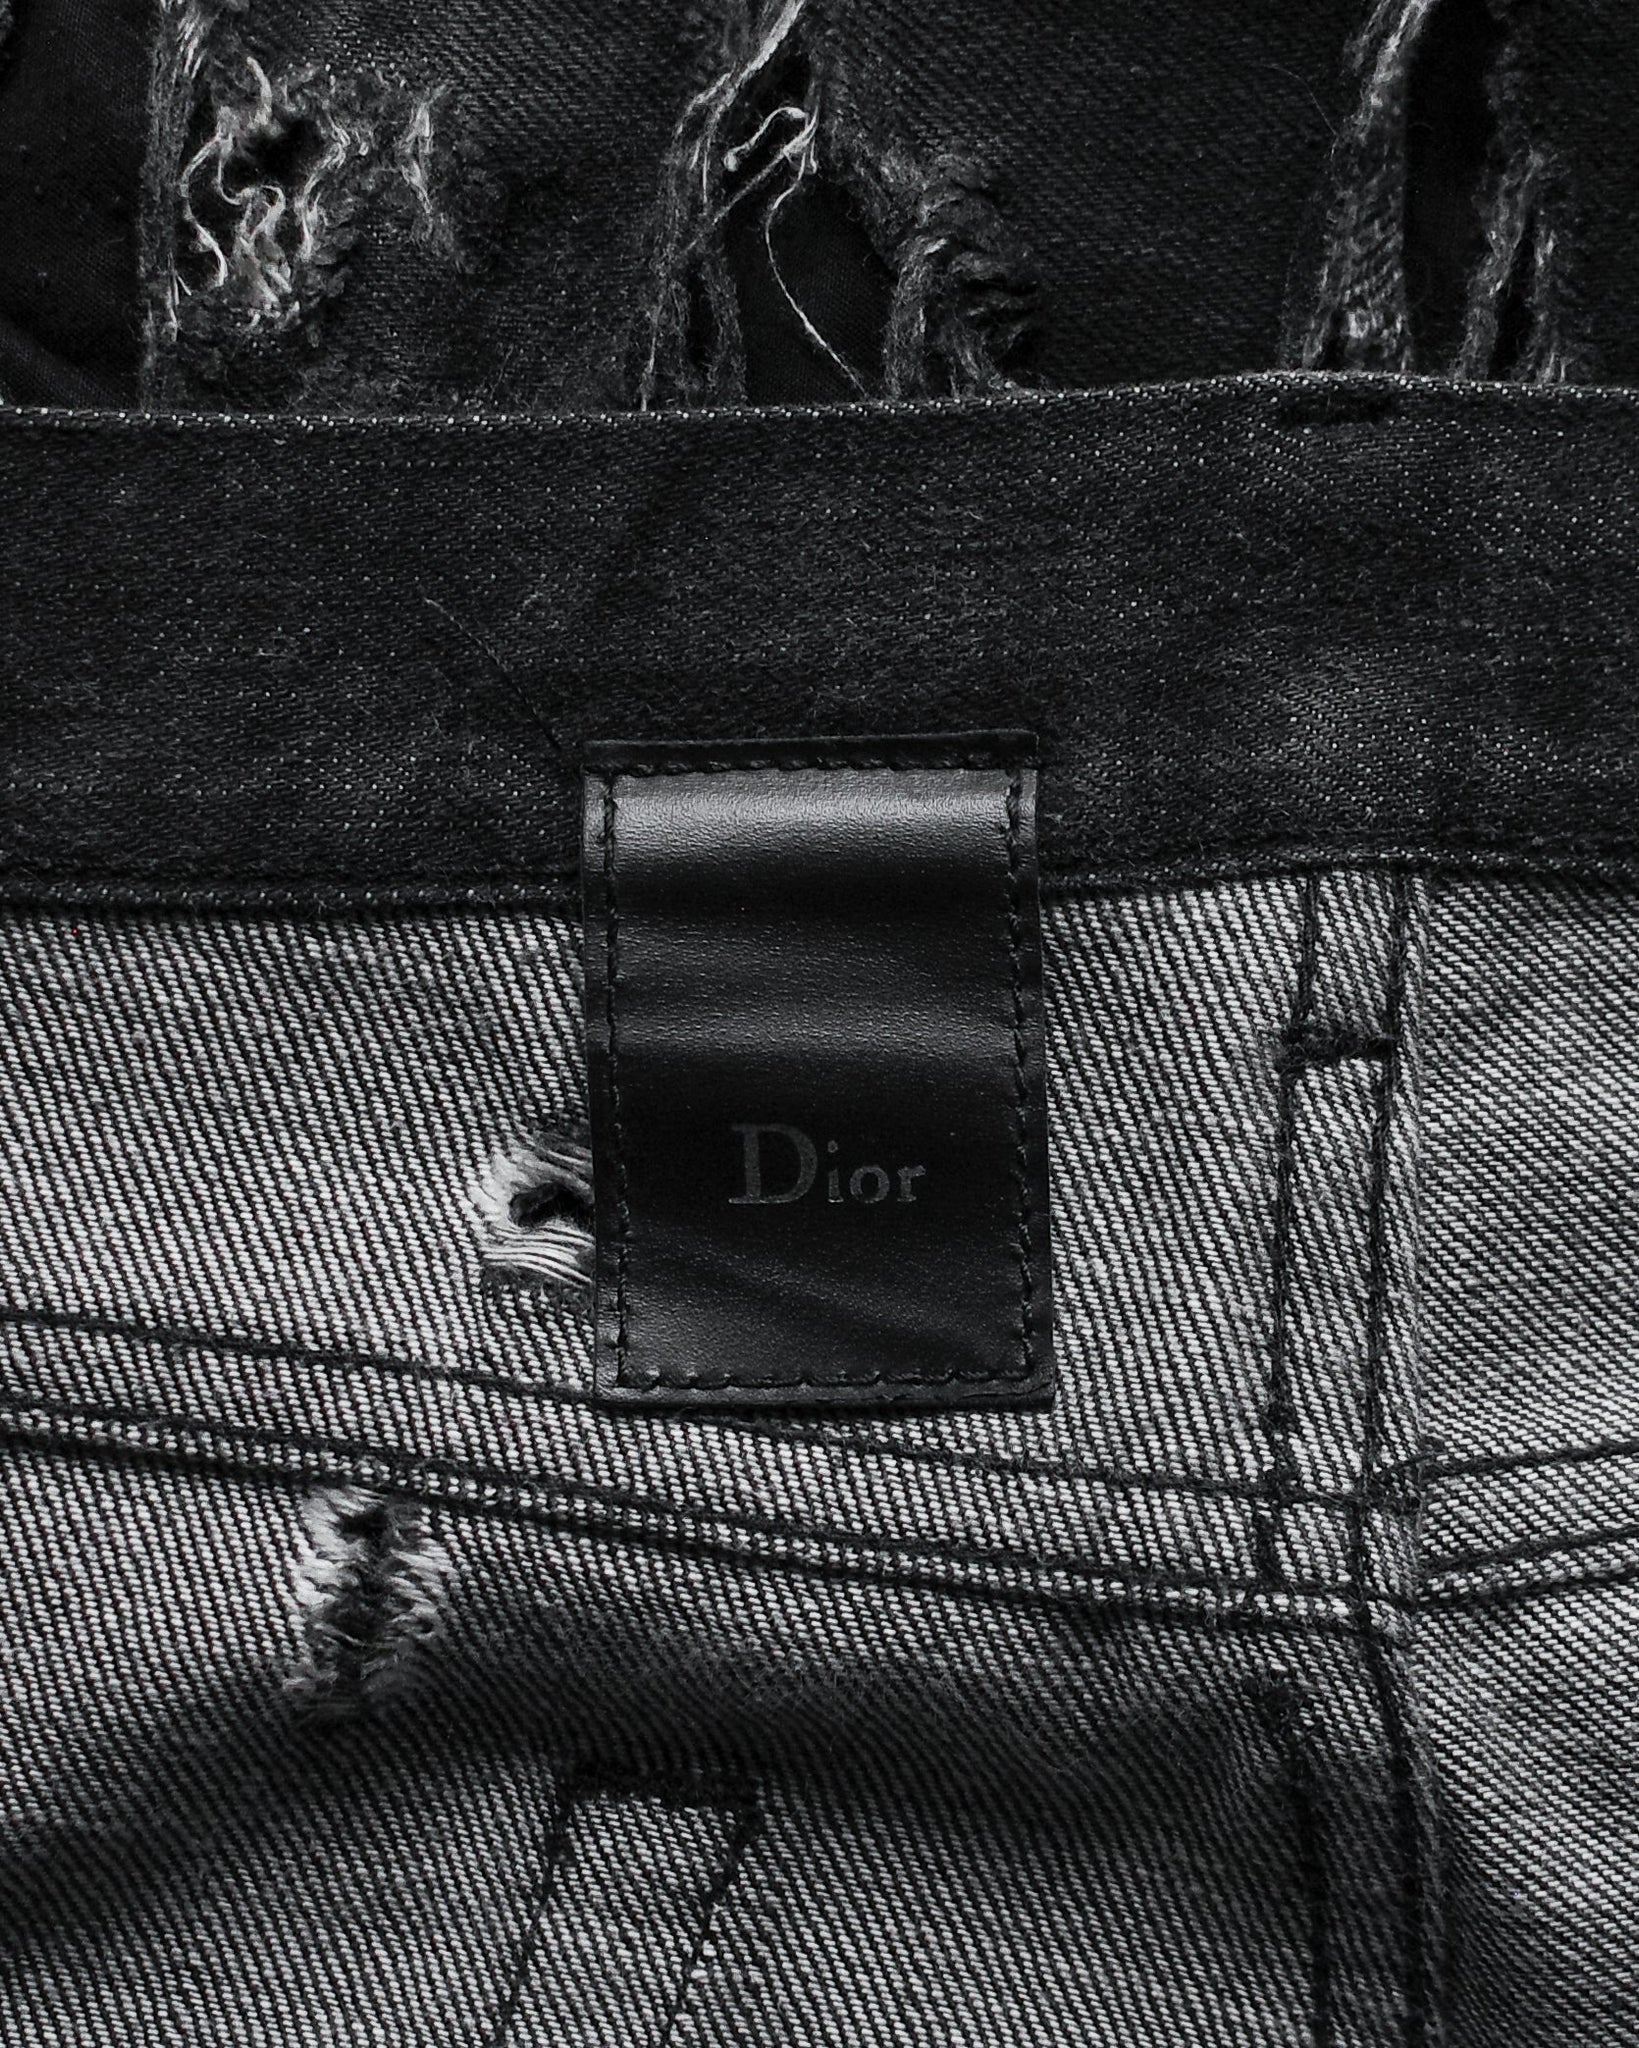 Dior Homme SS04 "Strip" Waxed Denim